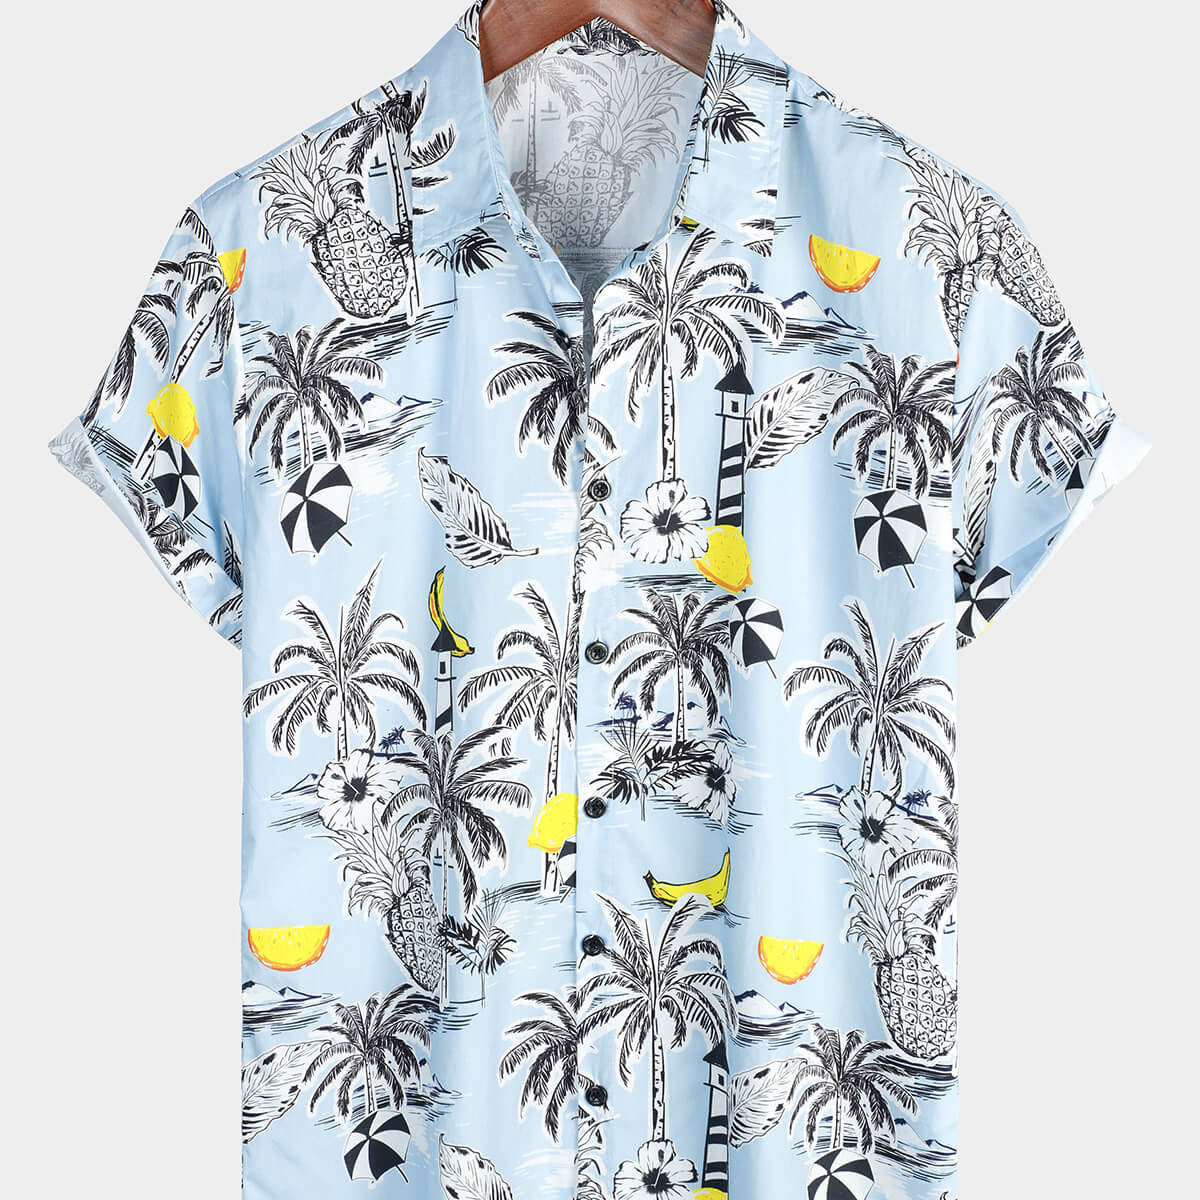 Men's Pineapple Cotton Fruit Tropical Button Up Beach Island Short Sleeve Light Blue Hawaiian Shirt